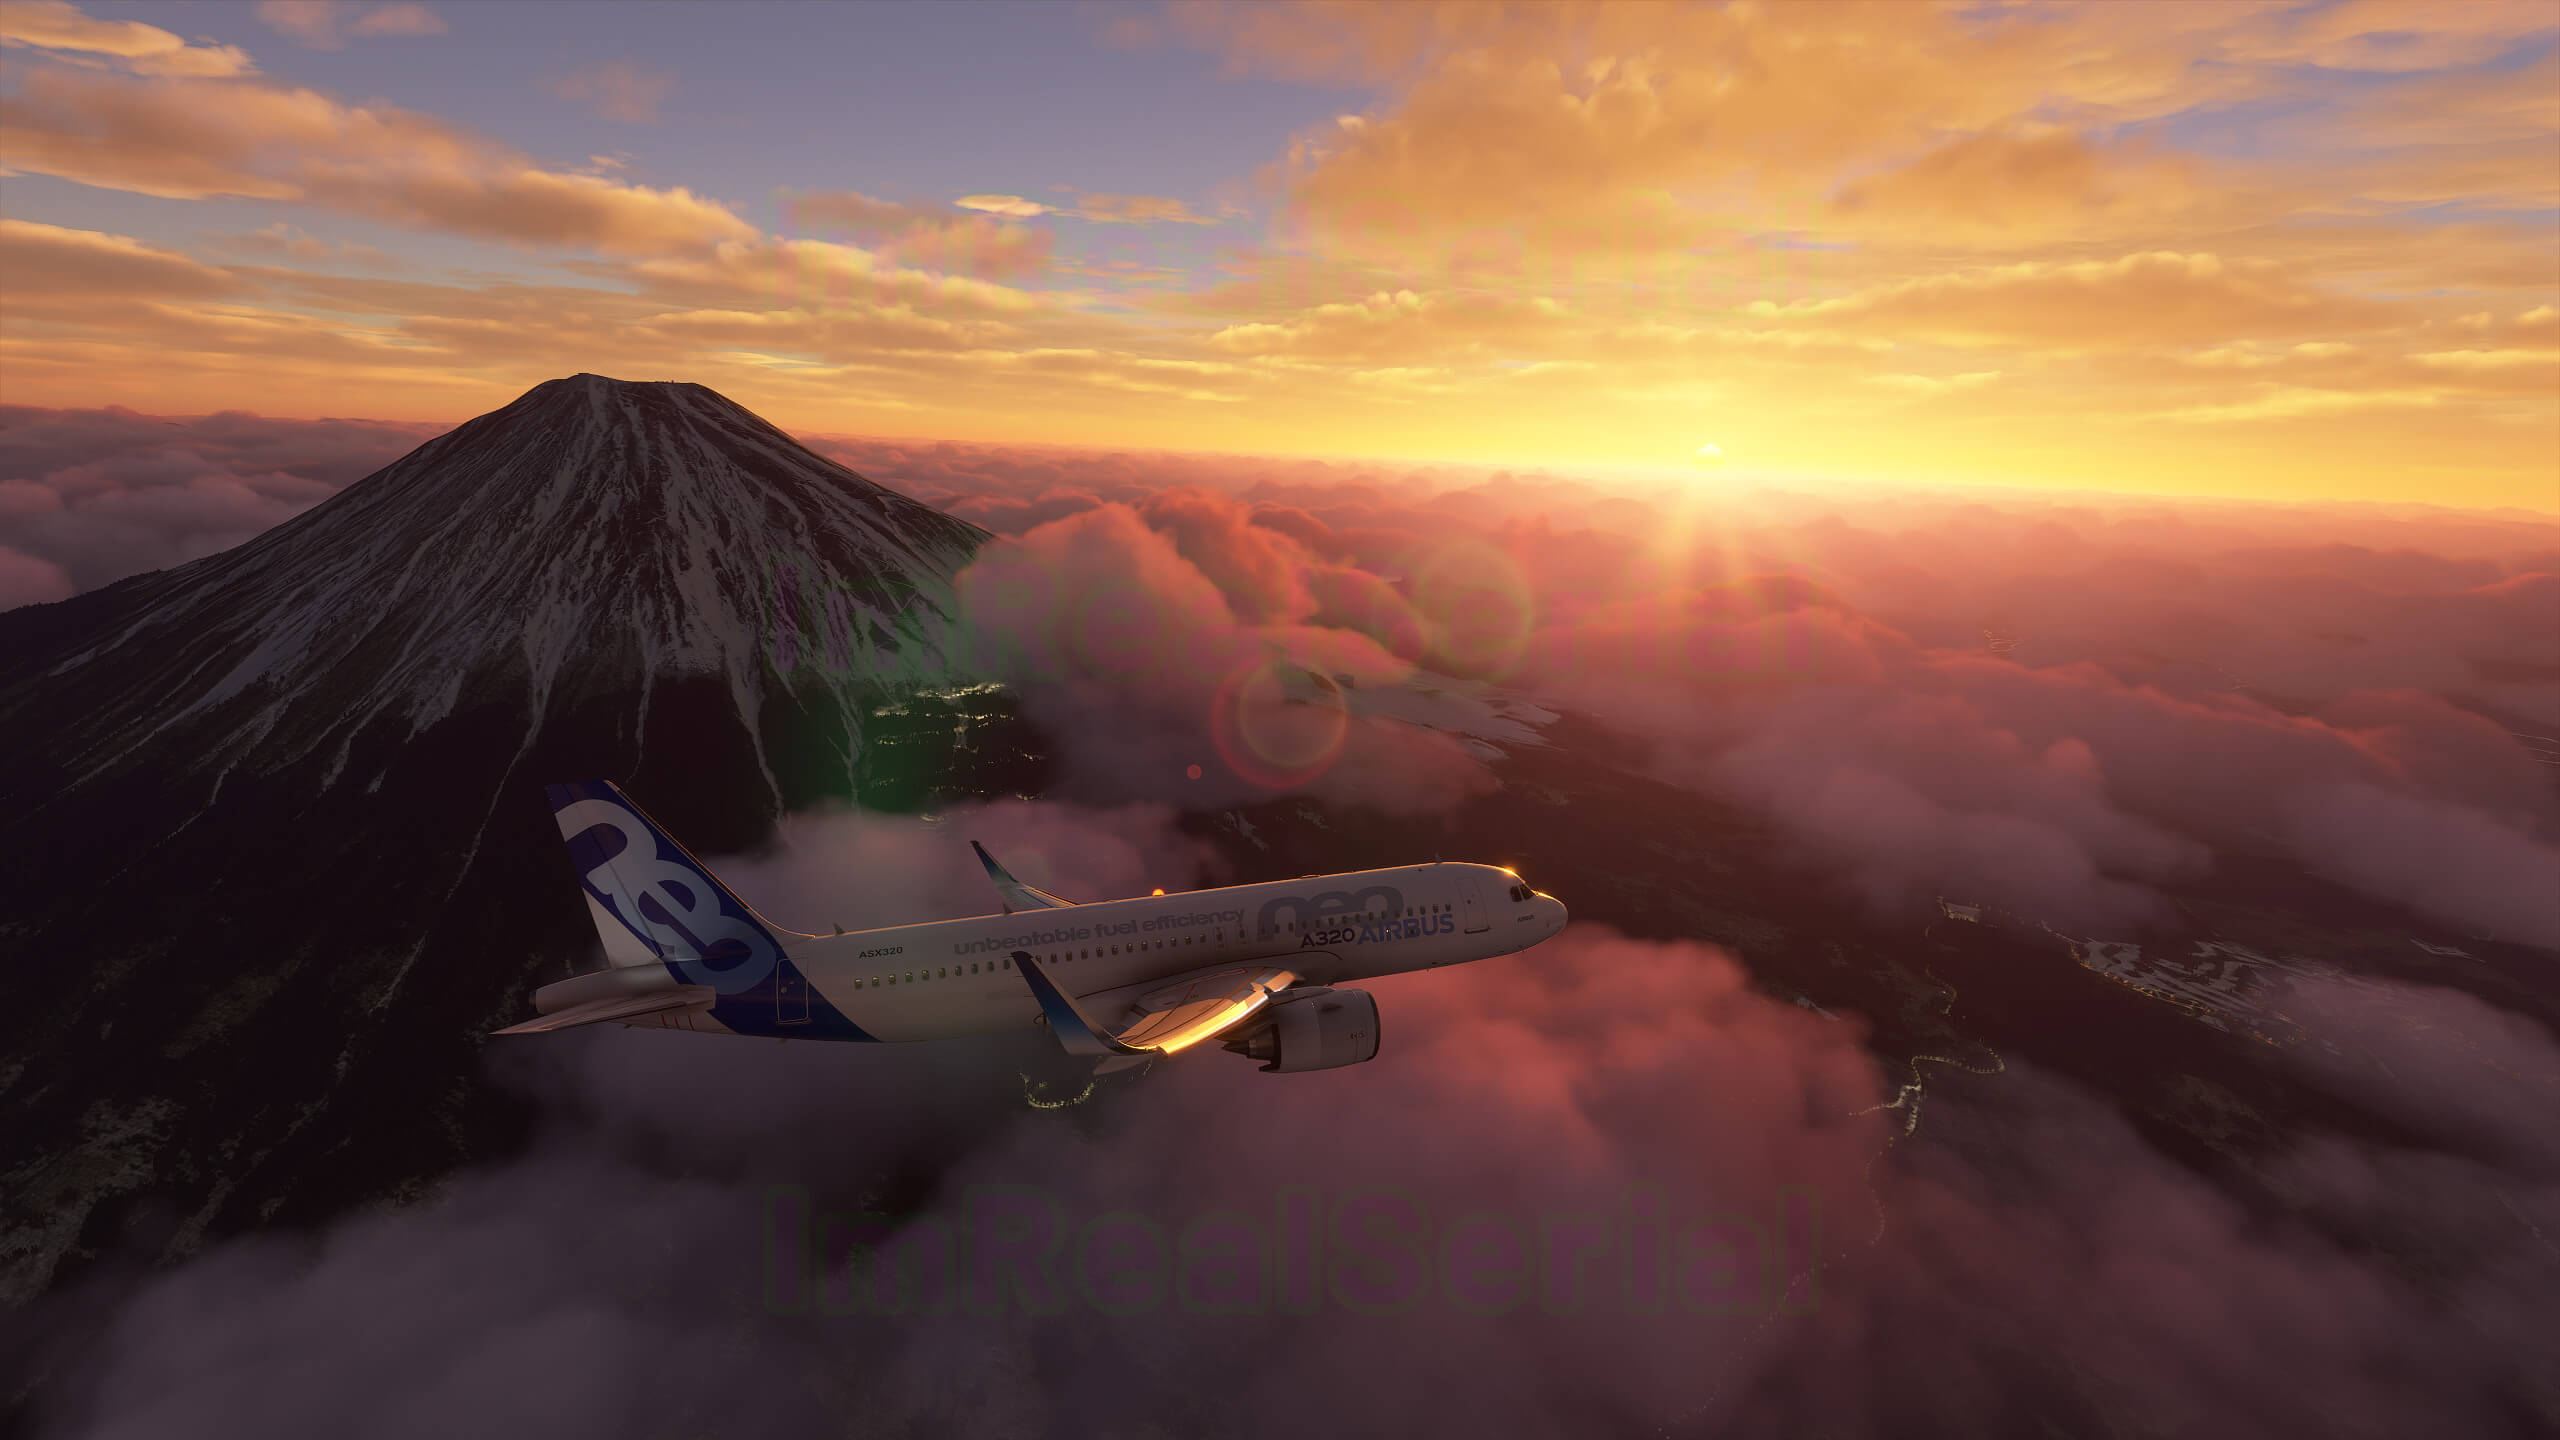 《微软飞行模拟》A测版本截图 云海景观令人惊叹